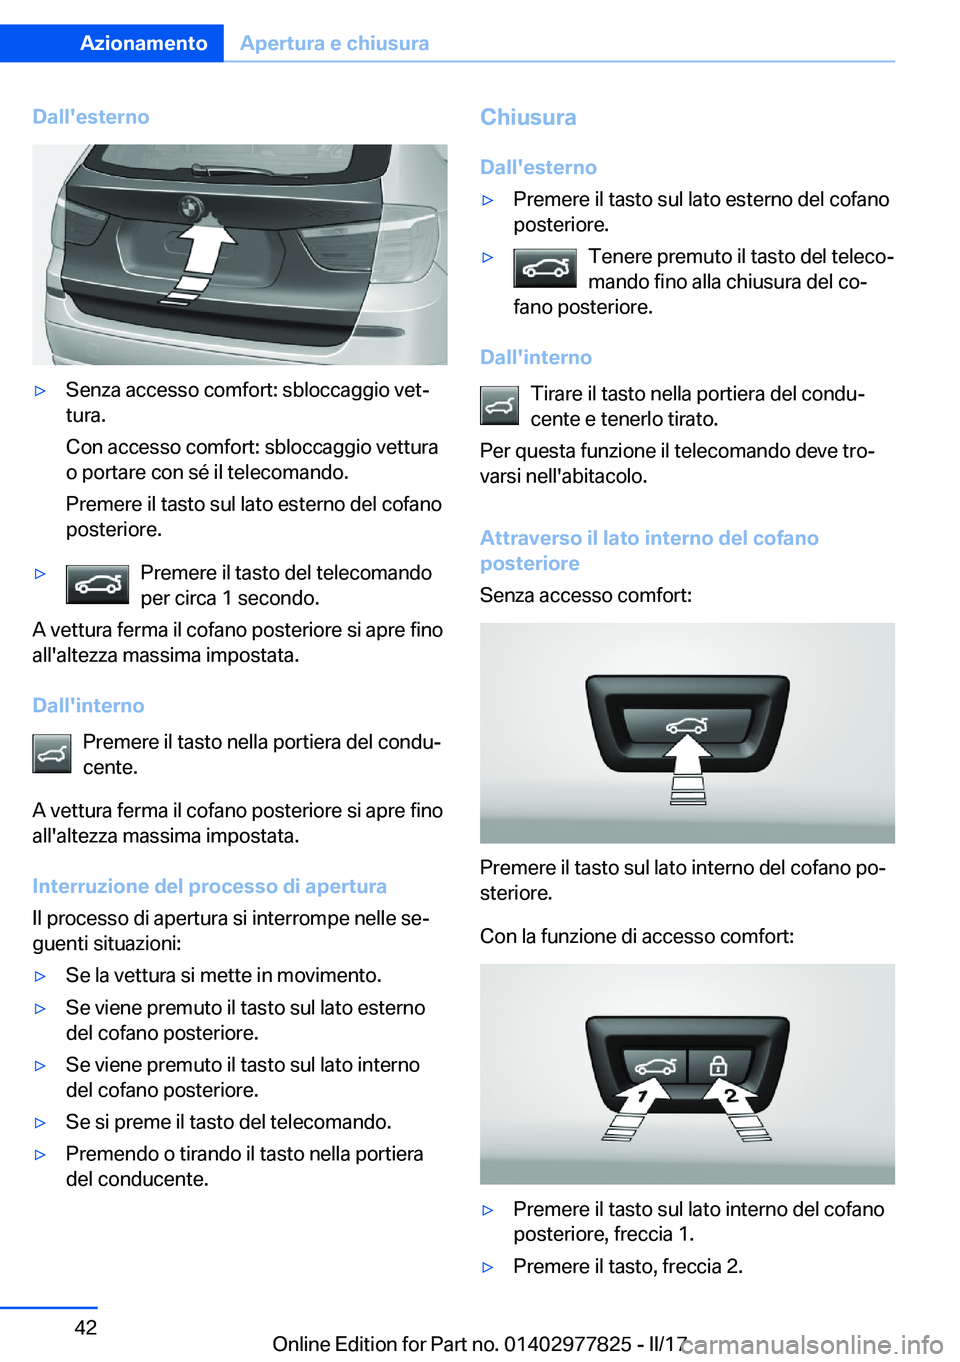 BMW X3 2017  Libretti Di Uso E manutenzione (in Italian) �D�a�l�l�'�e�s�t�e�r�n�o'y�S�e�n�z�a� �a�c�c�e�s�s�o� �c�o�m�f�o�r�t�:� �s�b�l�o�c�c�a�g�g�i�o� �v�e�tª
�t�u�r�a�.
�C�o�n� �a�c�c�e�s�s�o� �c�o�m�f�o�r�t�:� �s�b�l�o�c�c�a�g�g�i�o� �v�e�t�t�